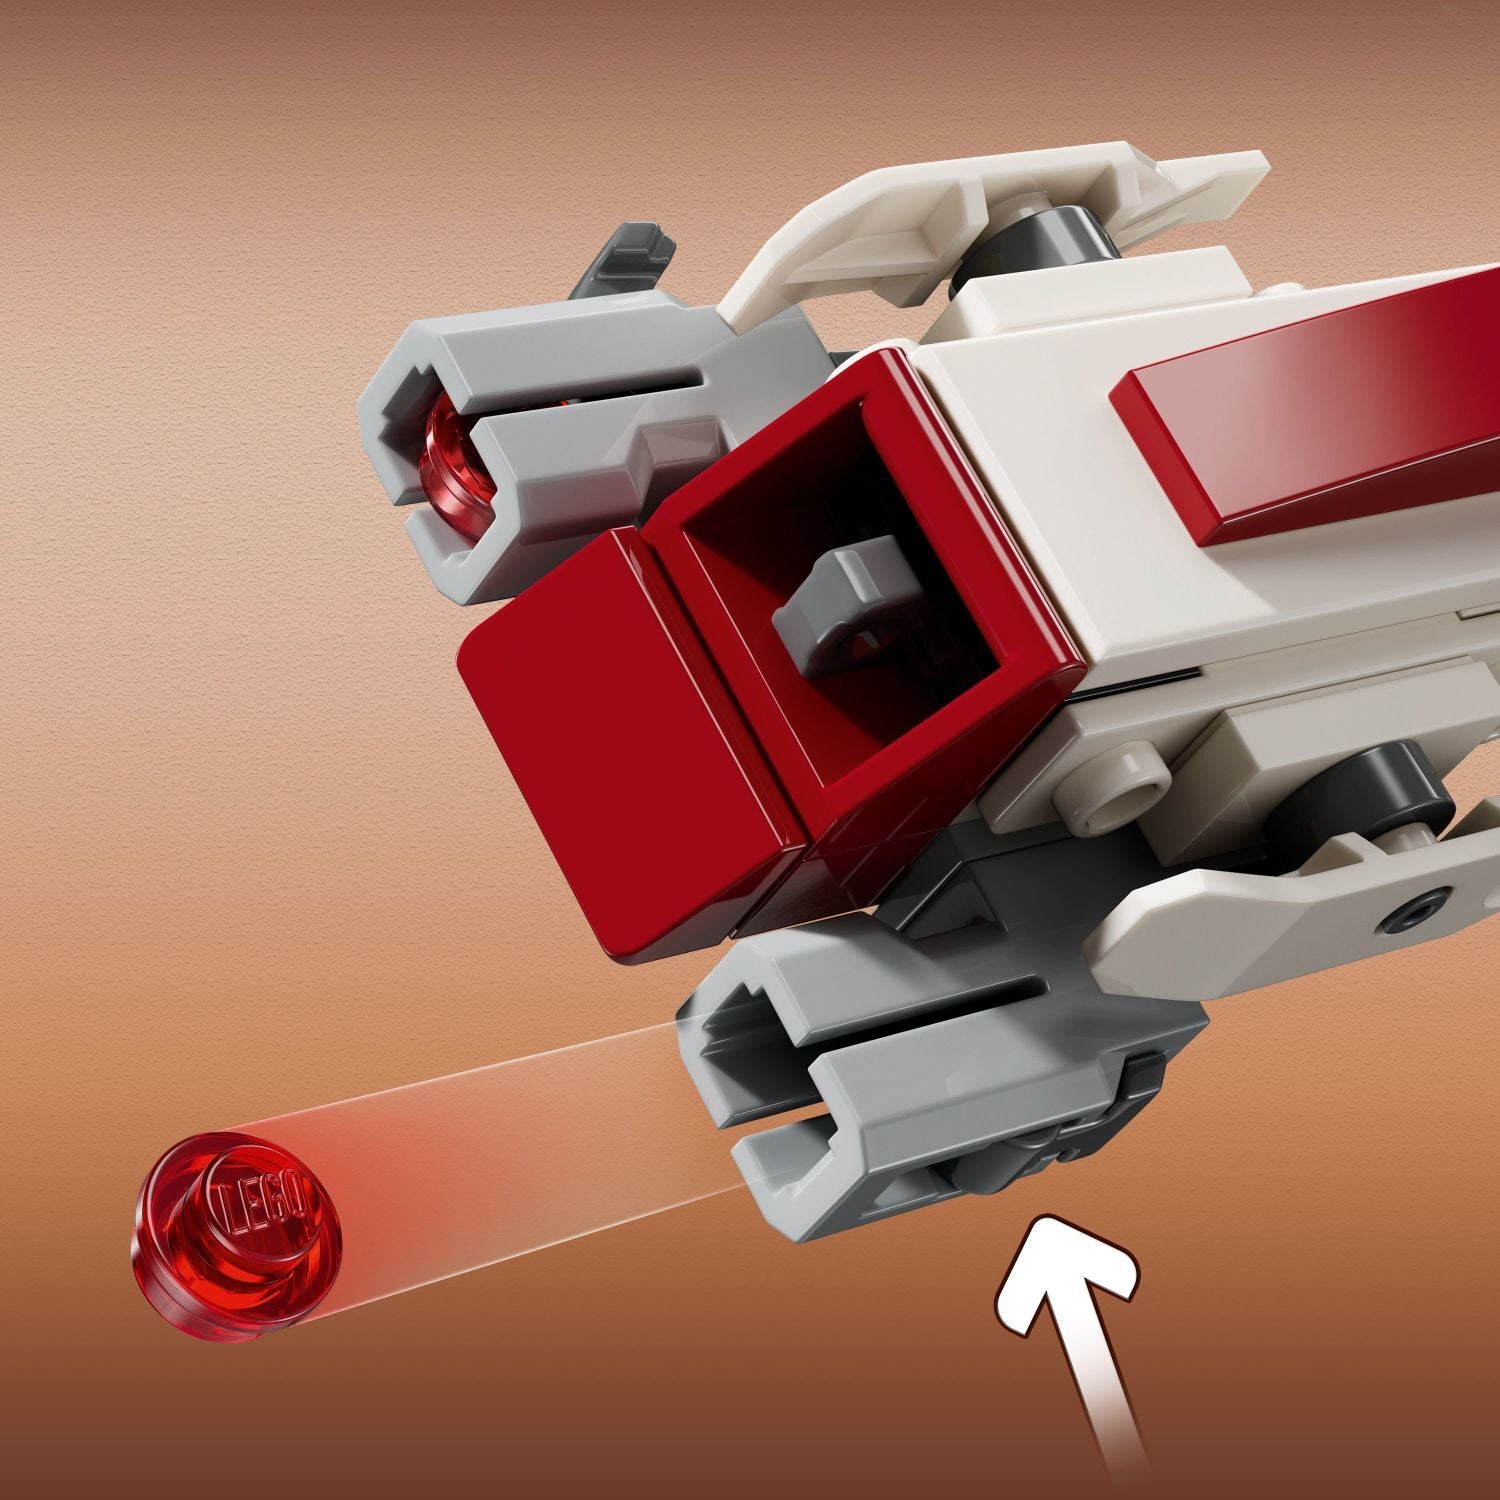 LEGO® Star Wars™: BARC Speeder™ Escape